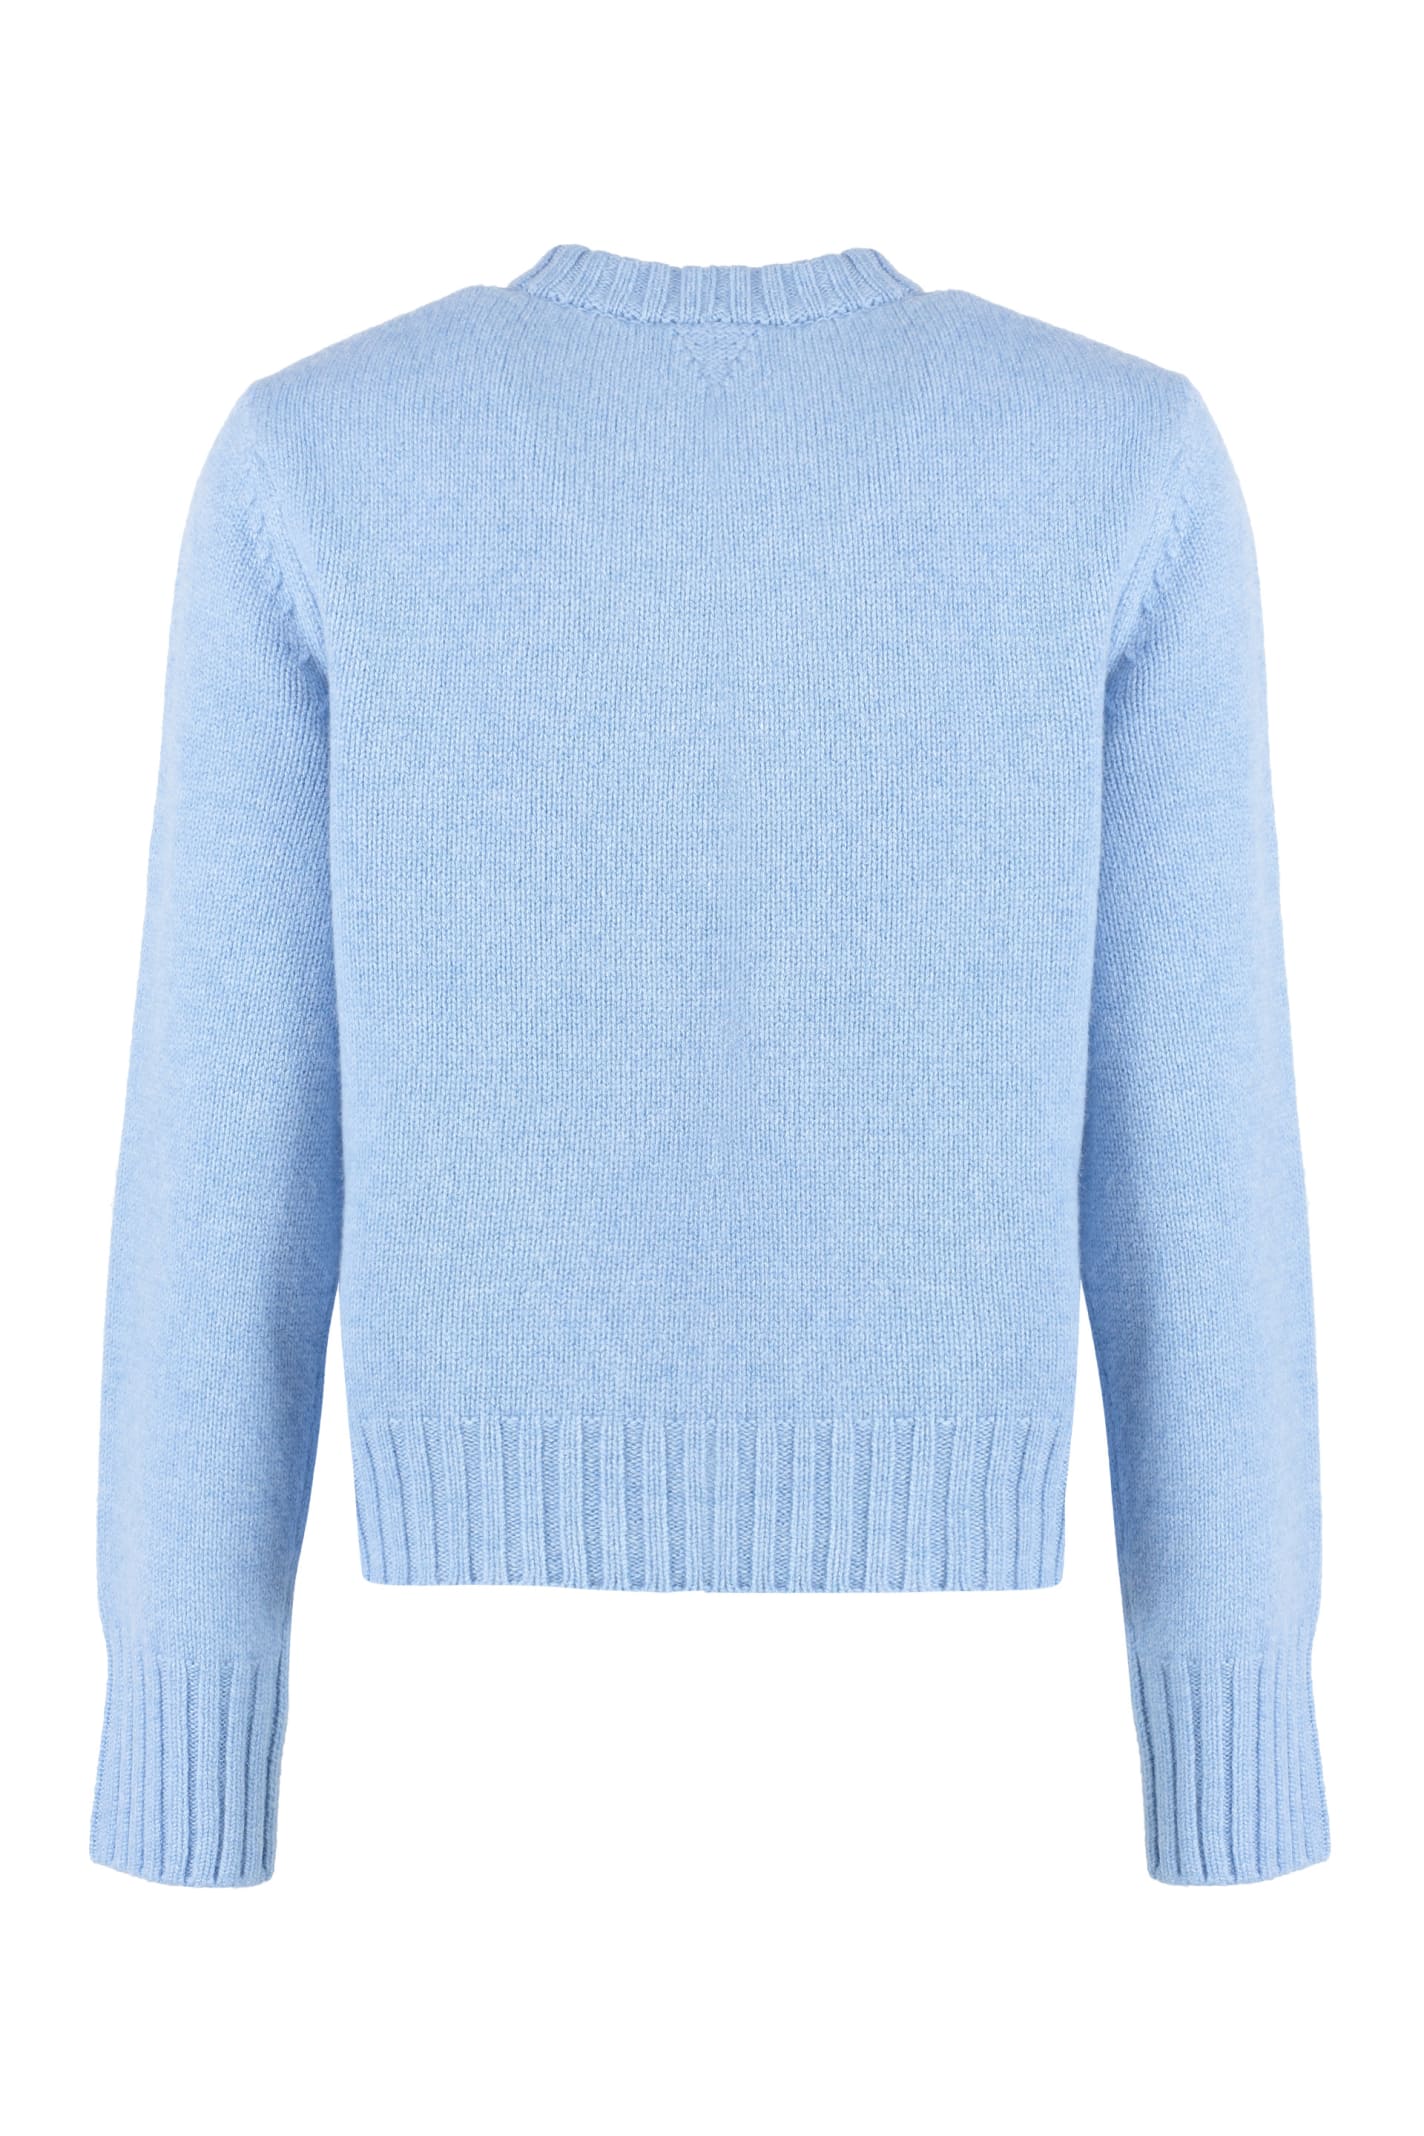 Shop Bottega Veneta Wool Crew-neck Sweater